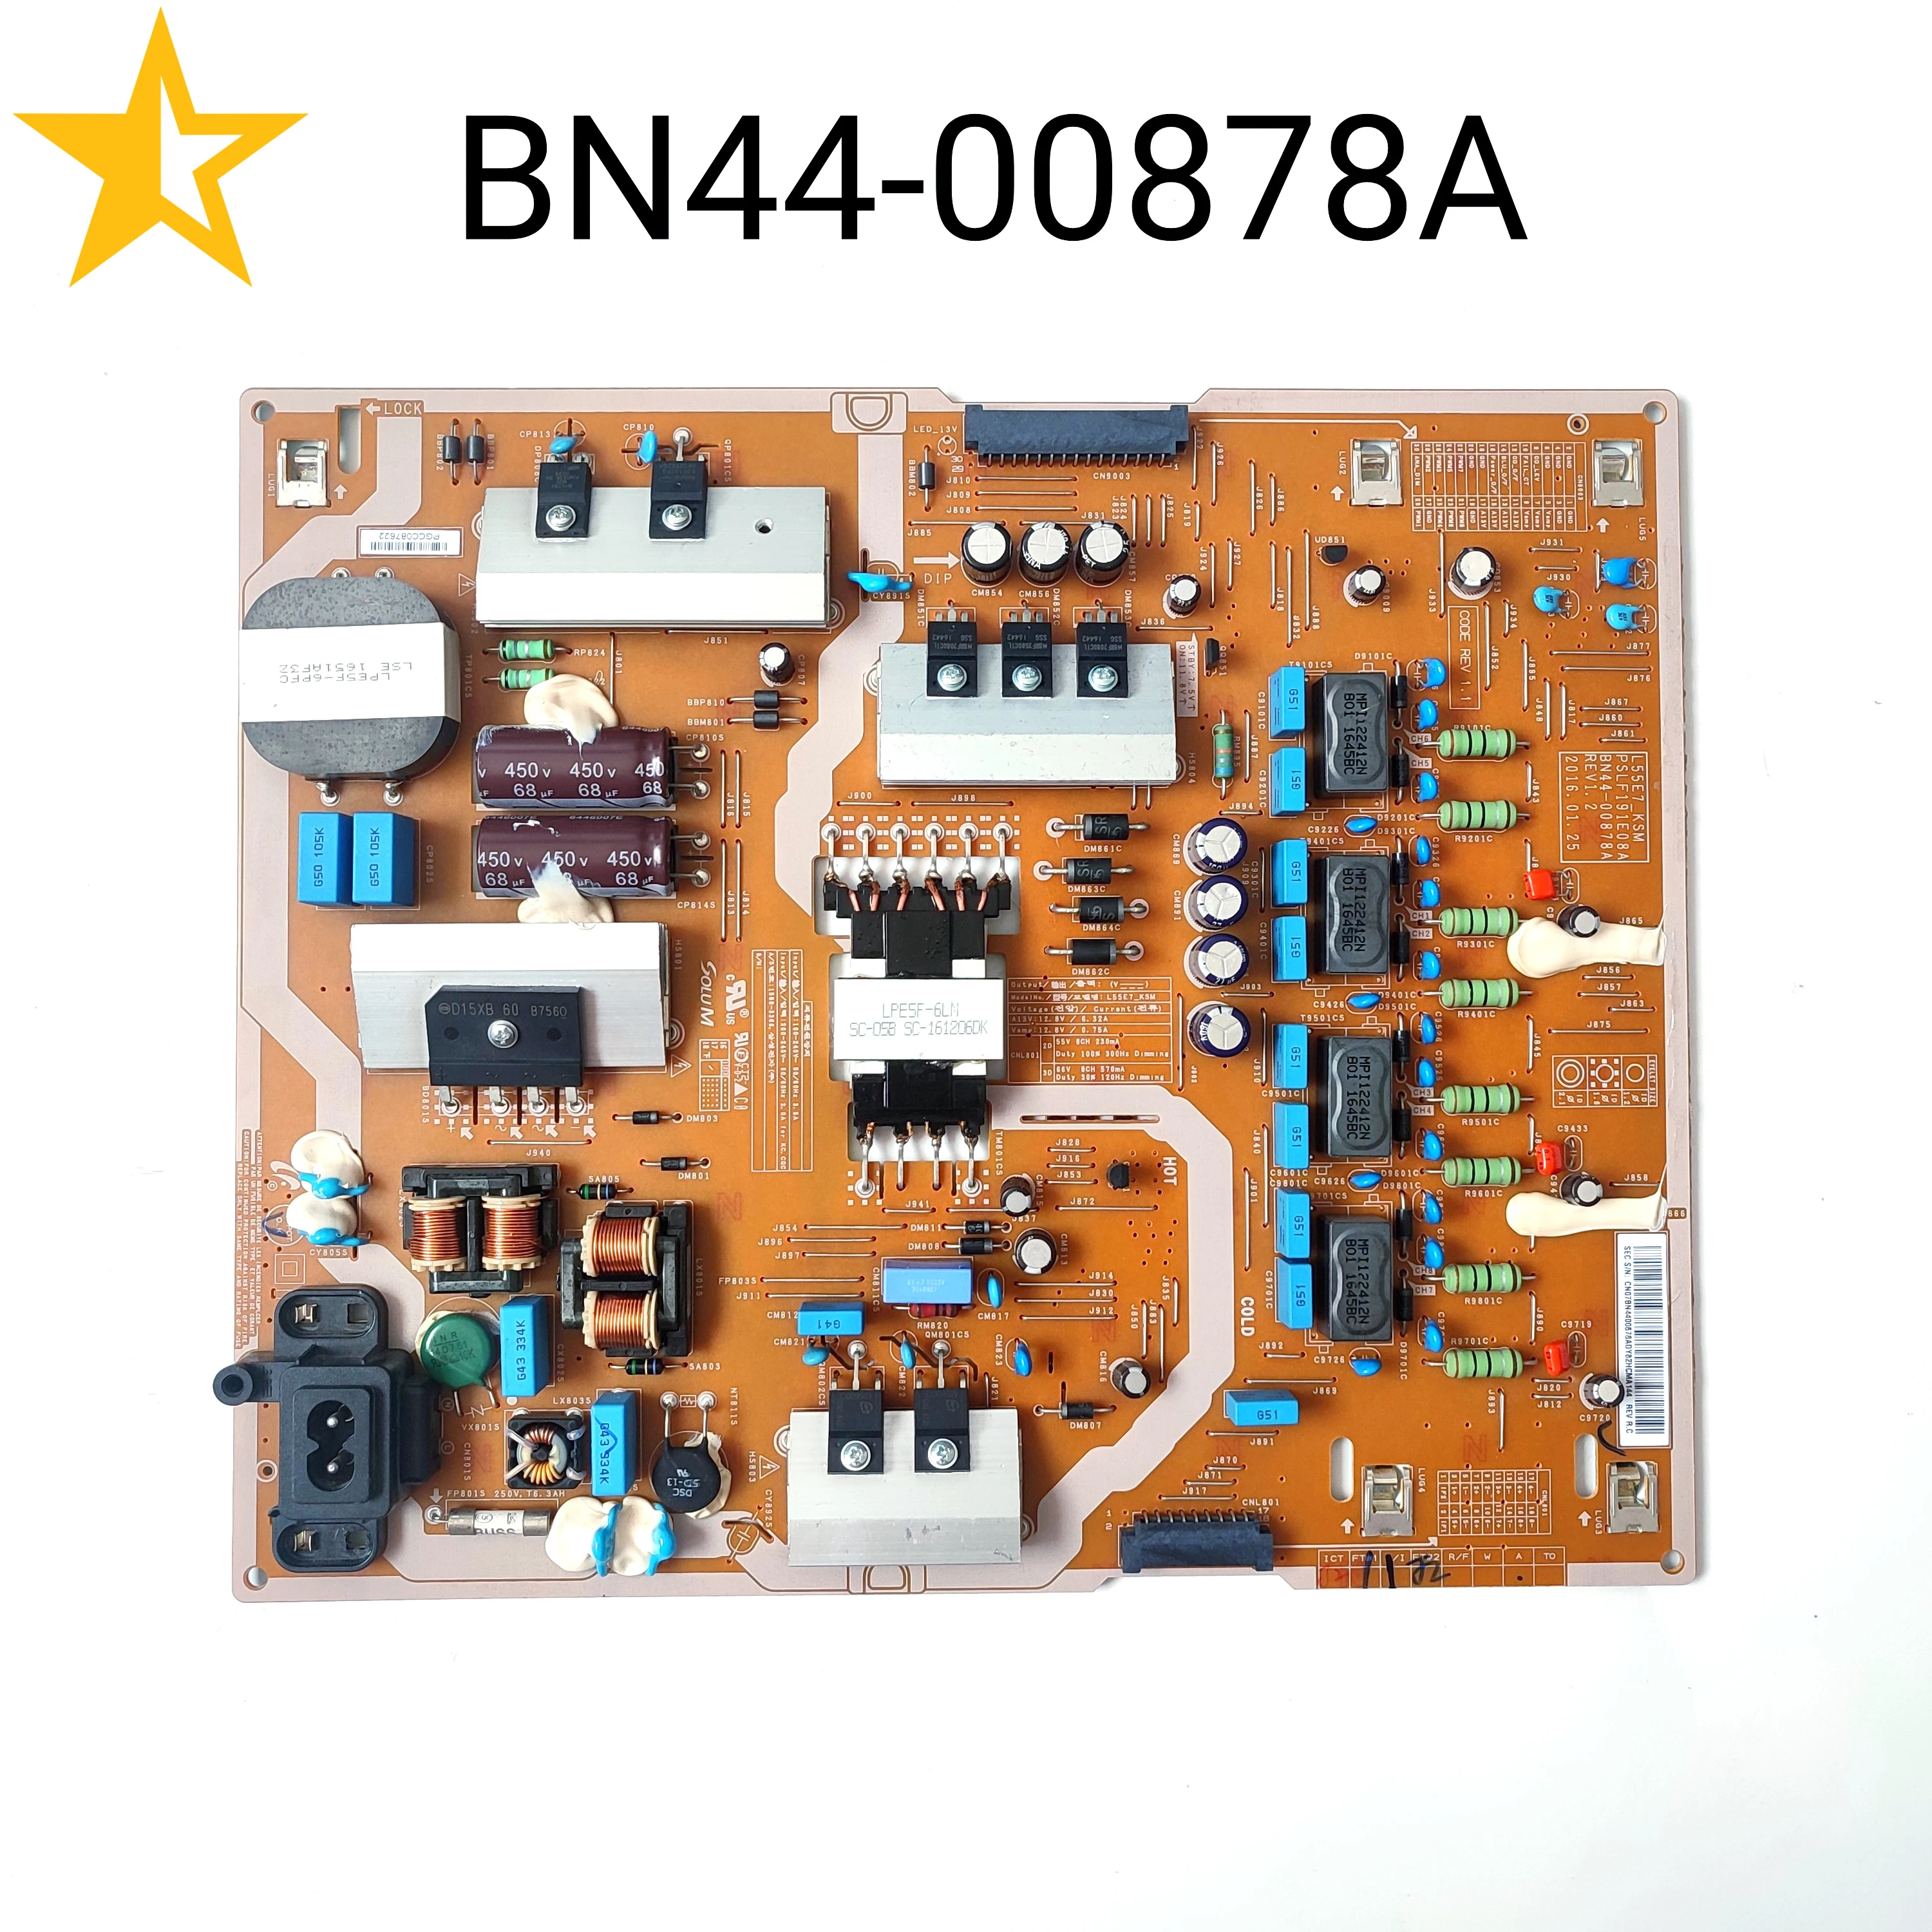 Genuine Original Power Board BN44-00878A L55E7_KSM PSLF191E08A for UN55KS8000FXZA UN55KS800DFXZA UN55KS8500FXZA UN55KS8000F TV